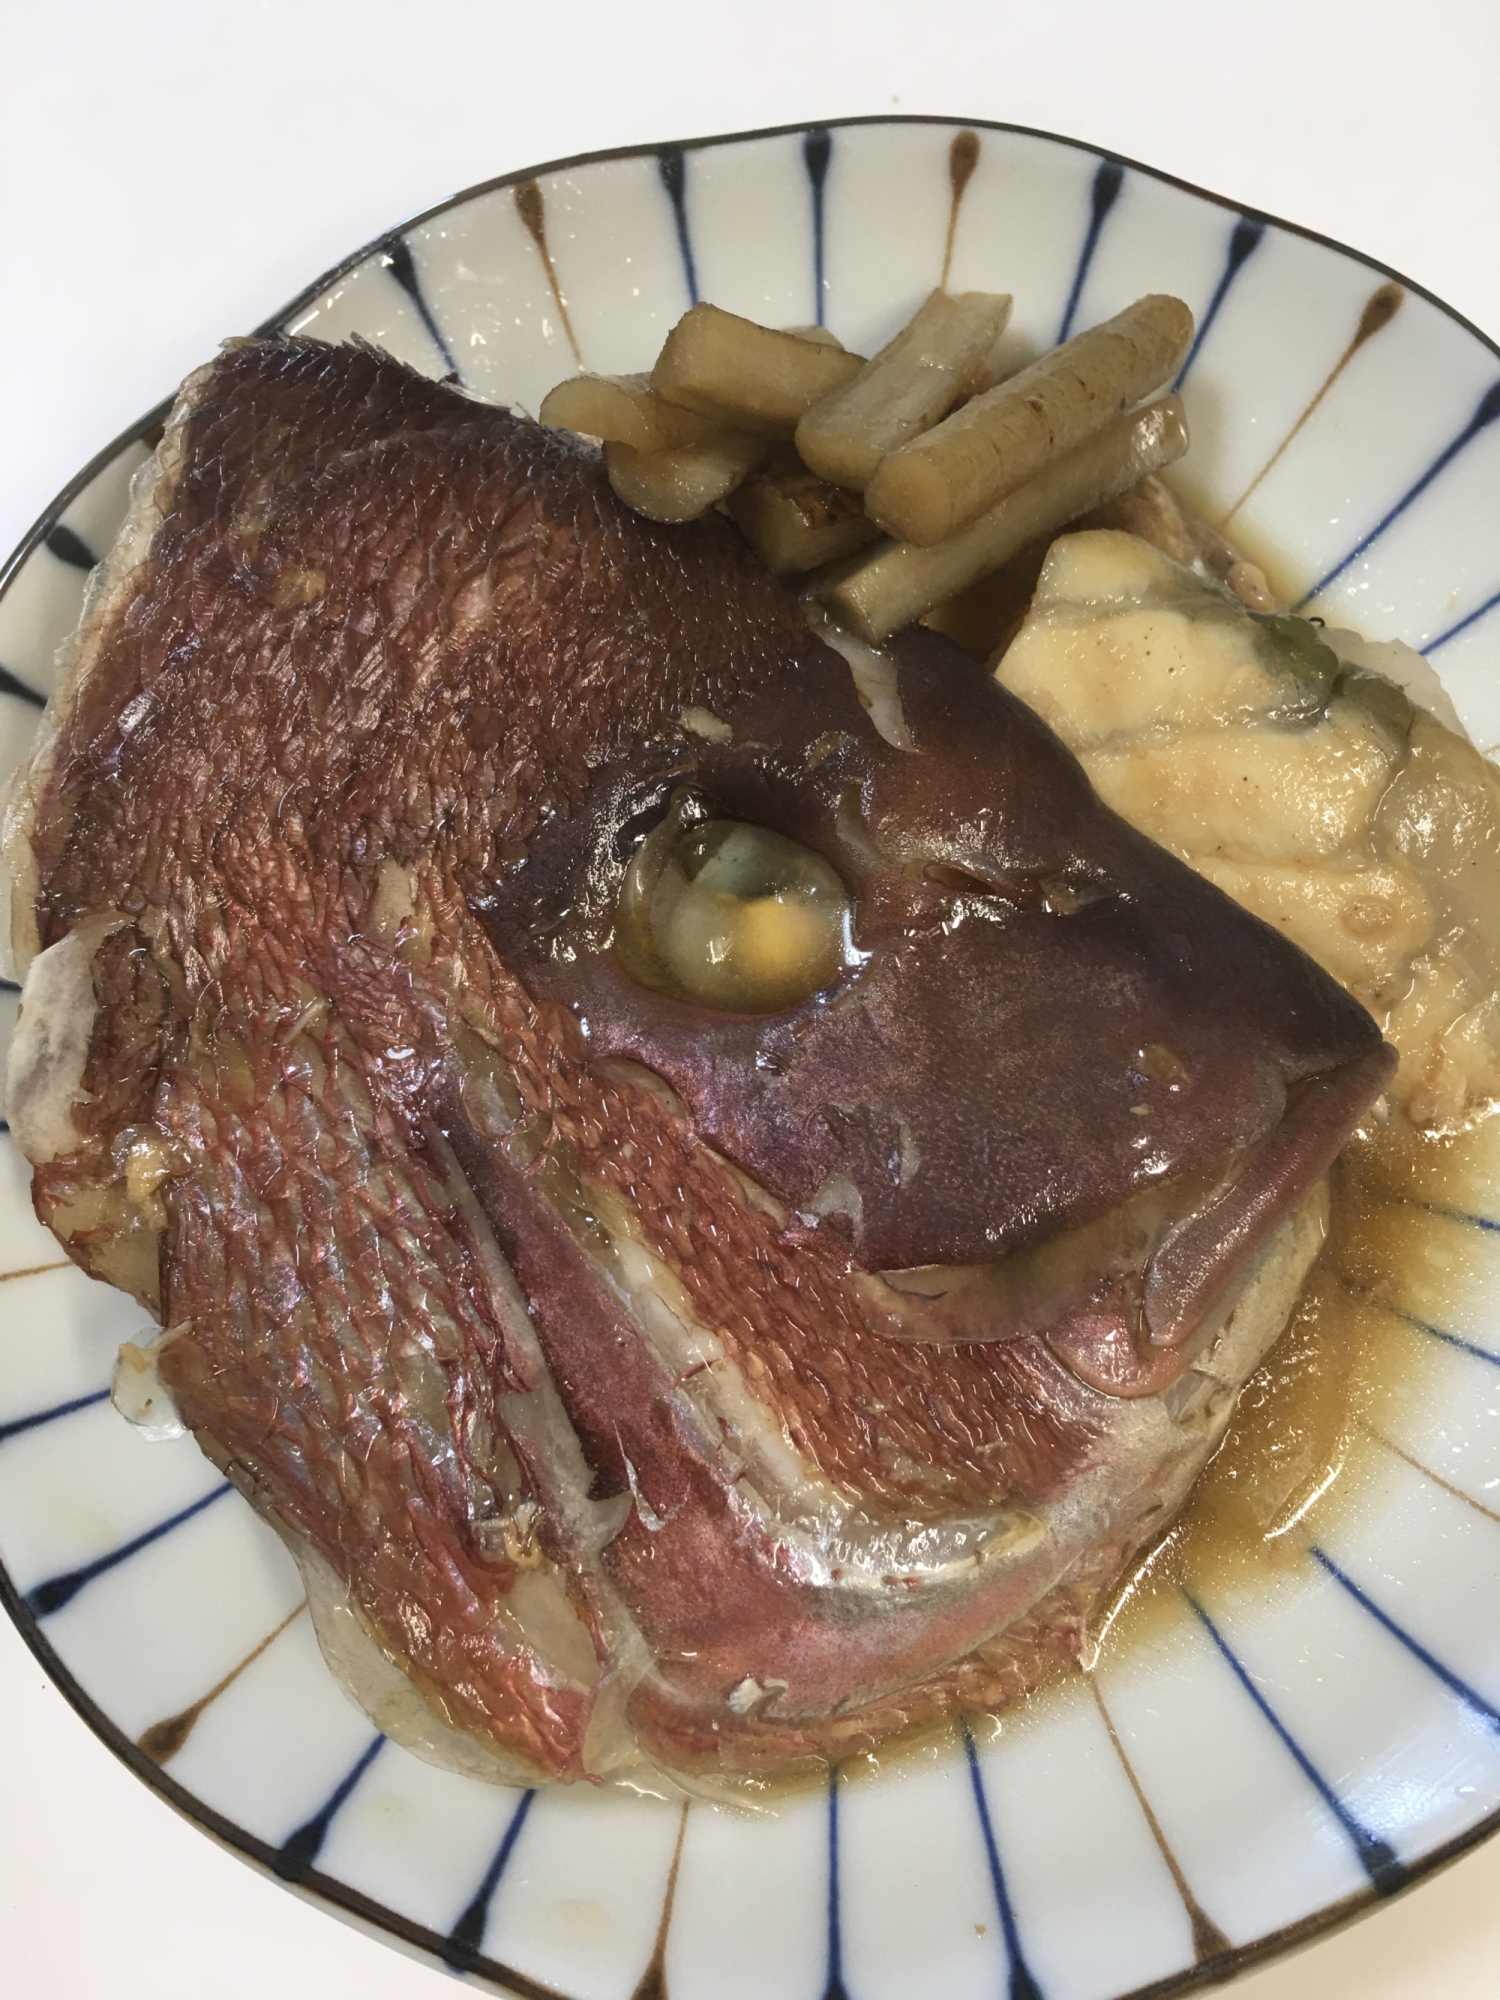 鯛とゴボウのアラ炊き